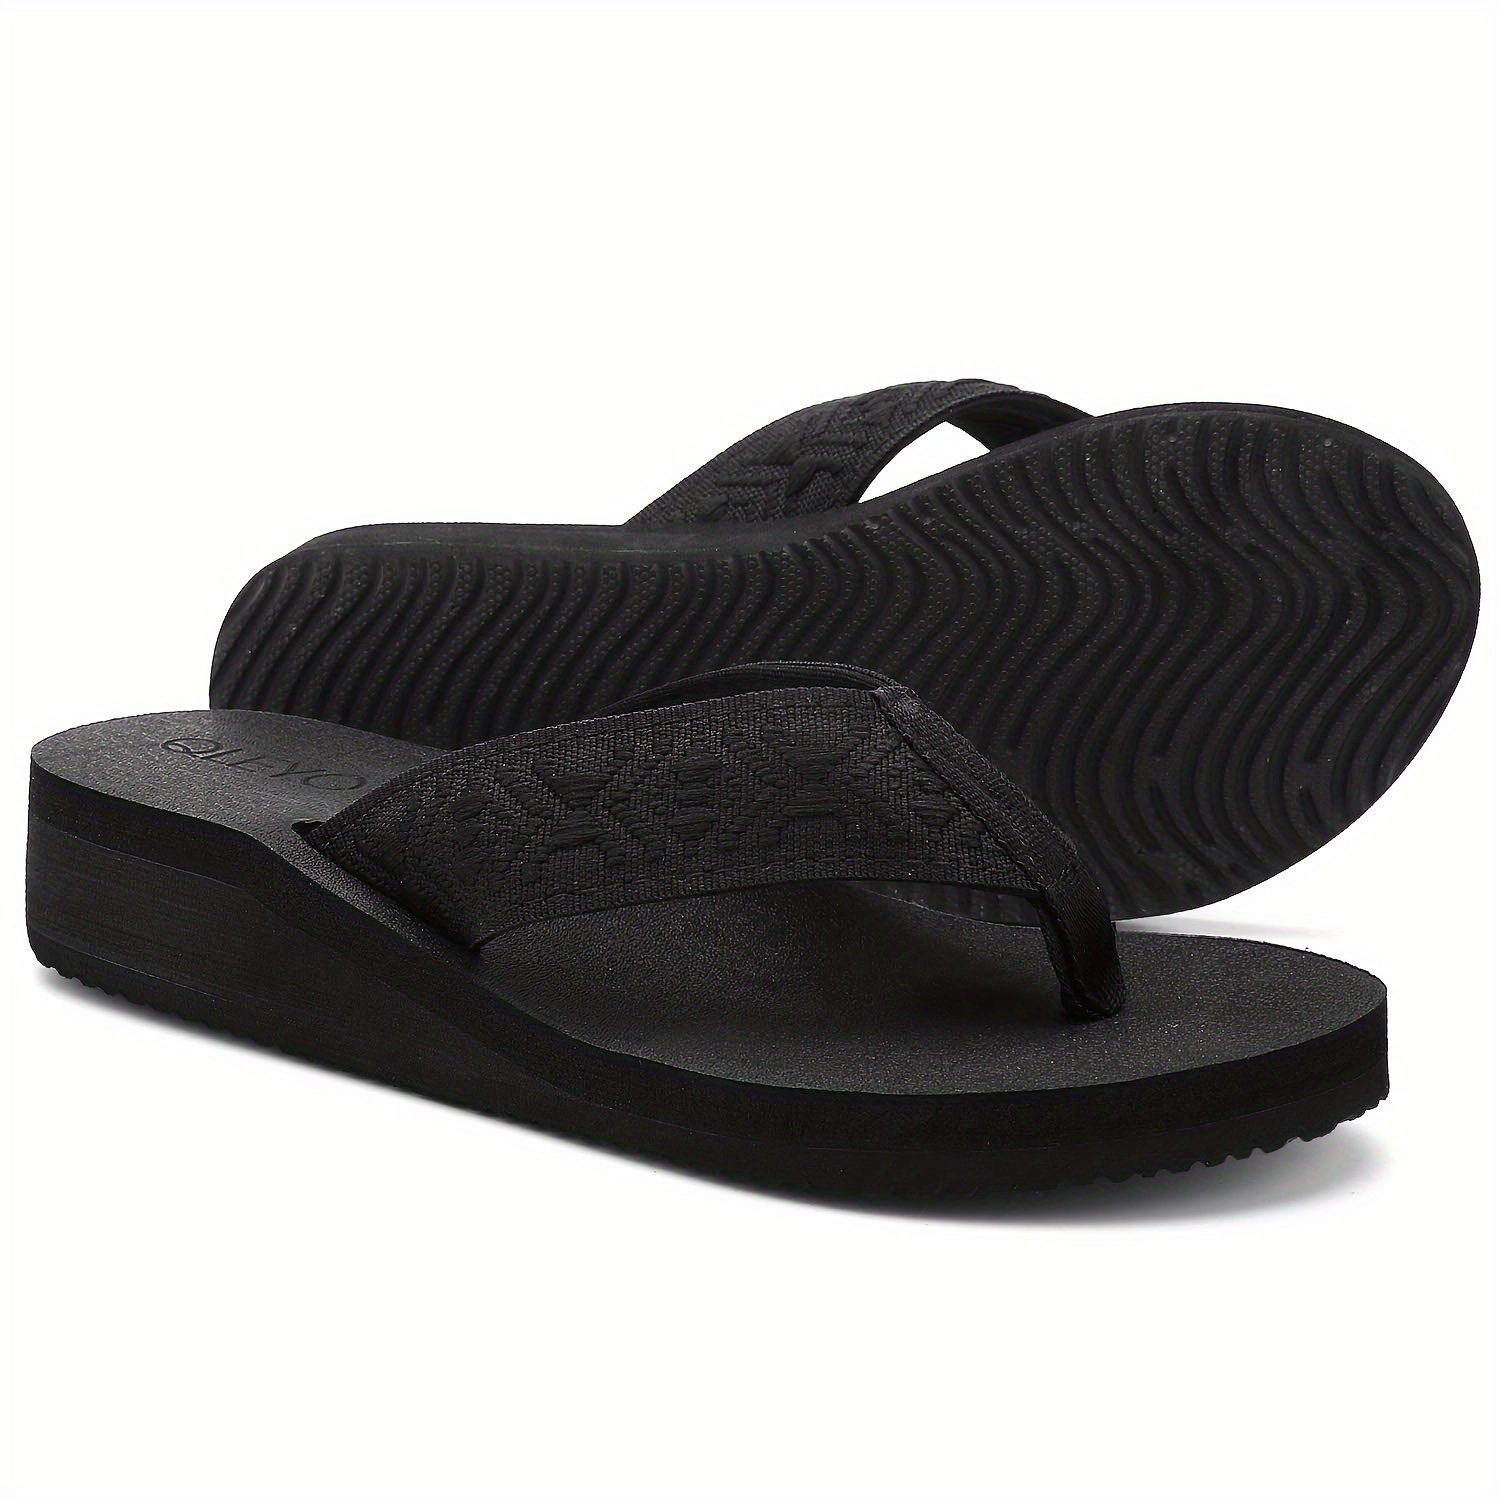 

Women's Arch Support Flip Flops, Lightweight Slip On Wedge Slide Shoes, Casual Indoor Outdoor Beach Slide Sandals